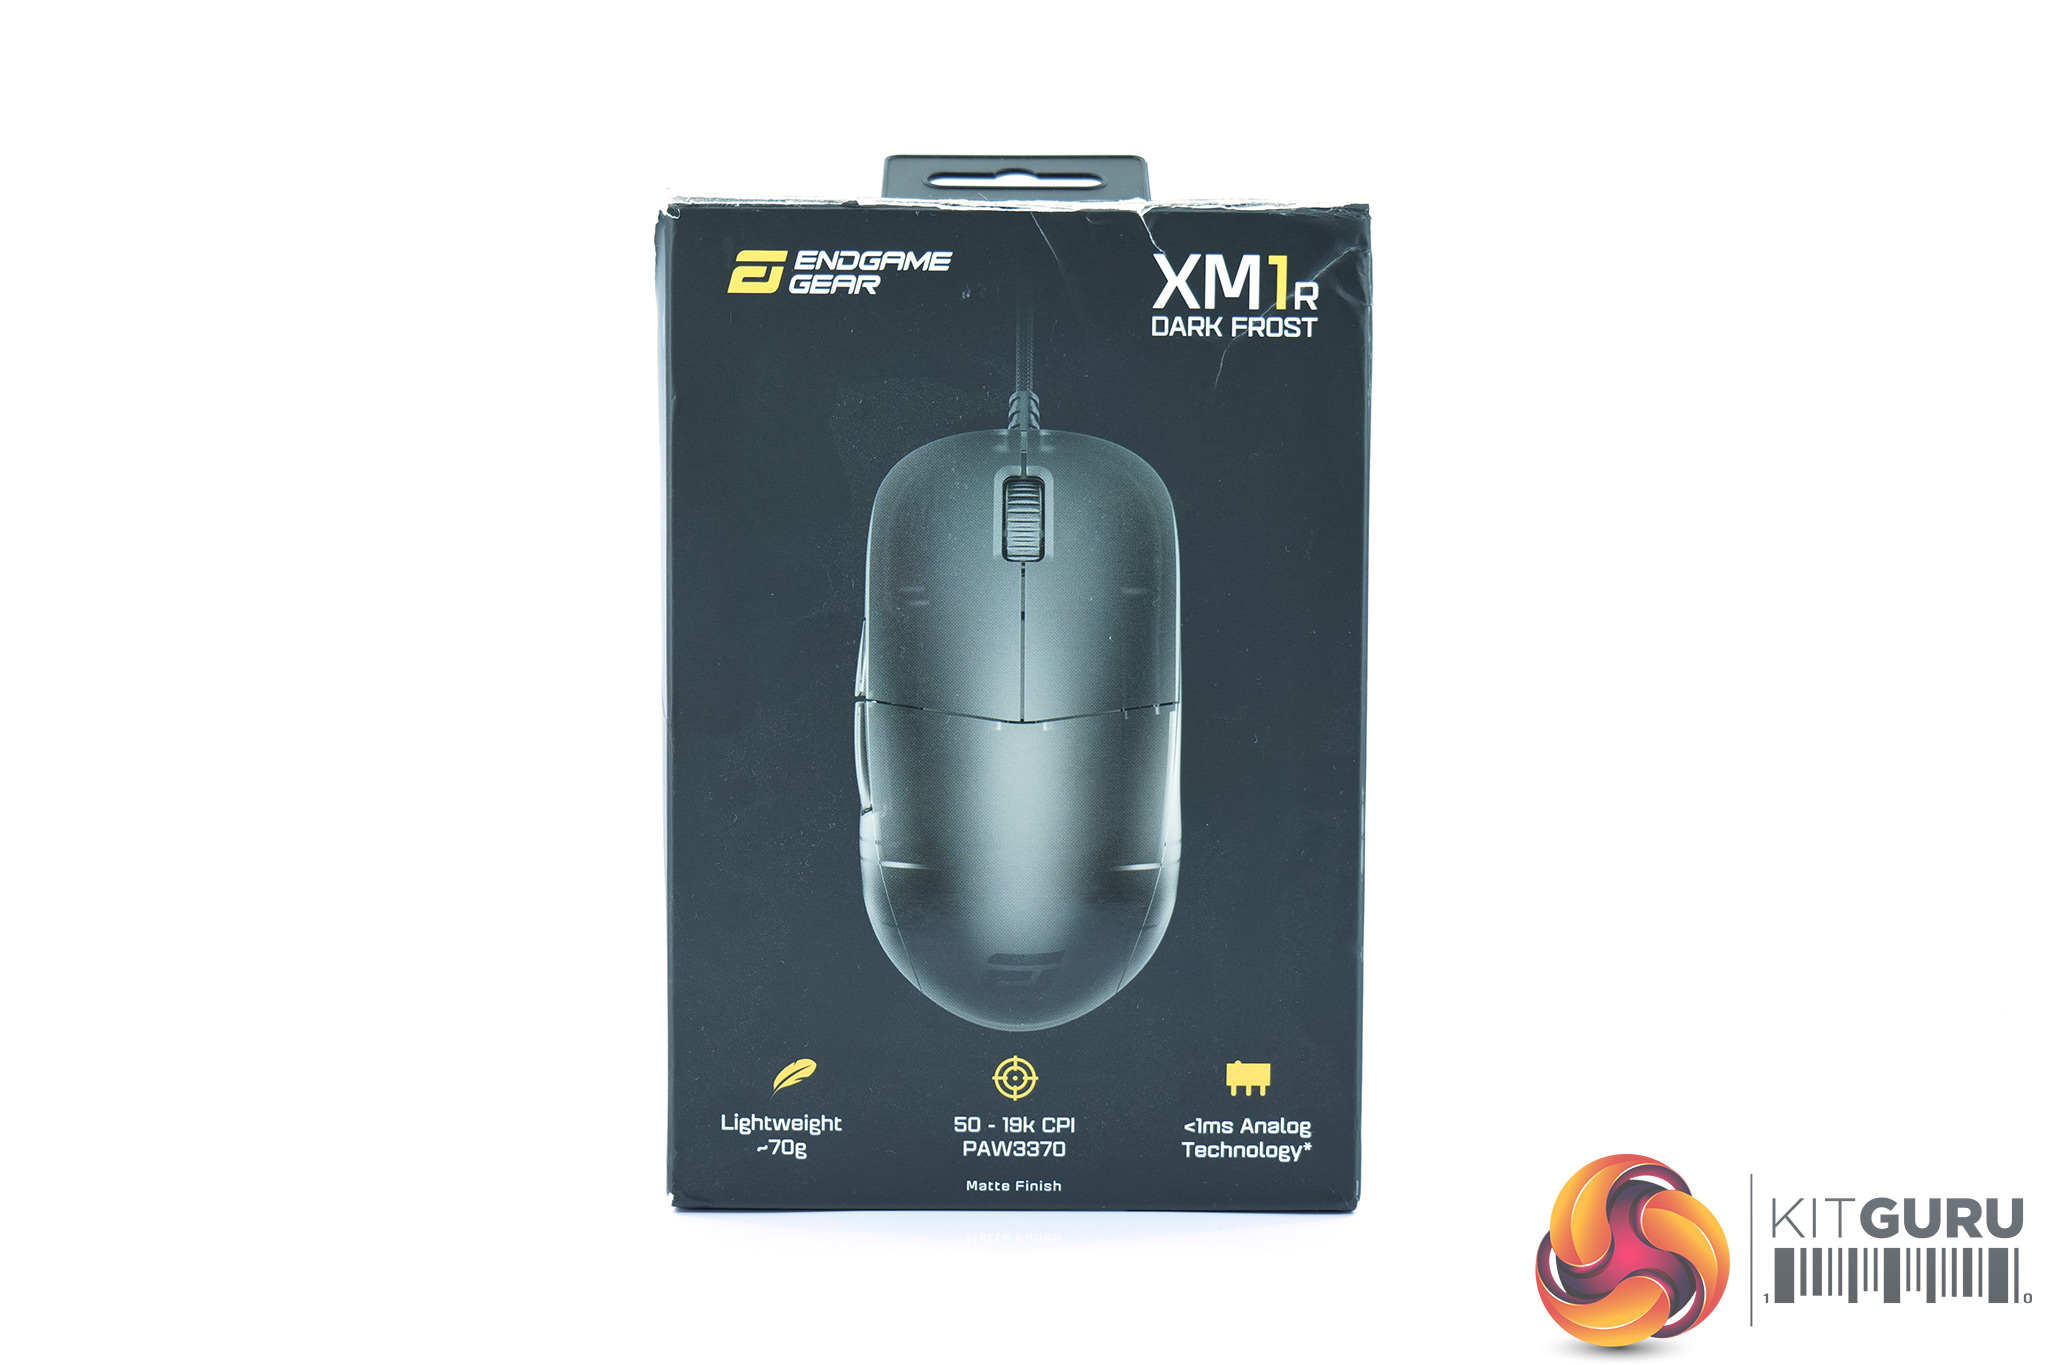 Endgame Gear Xm1r Mouse Review Kitguru